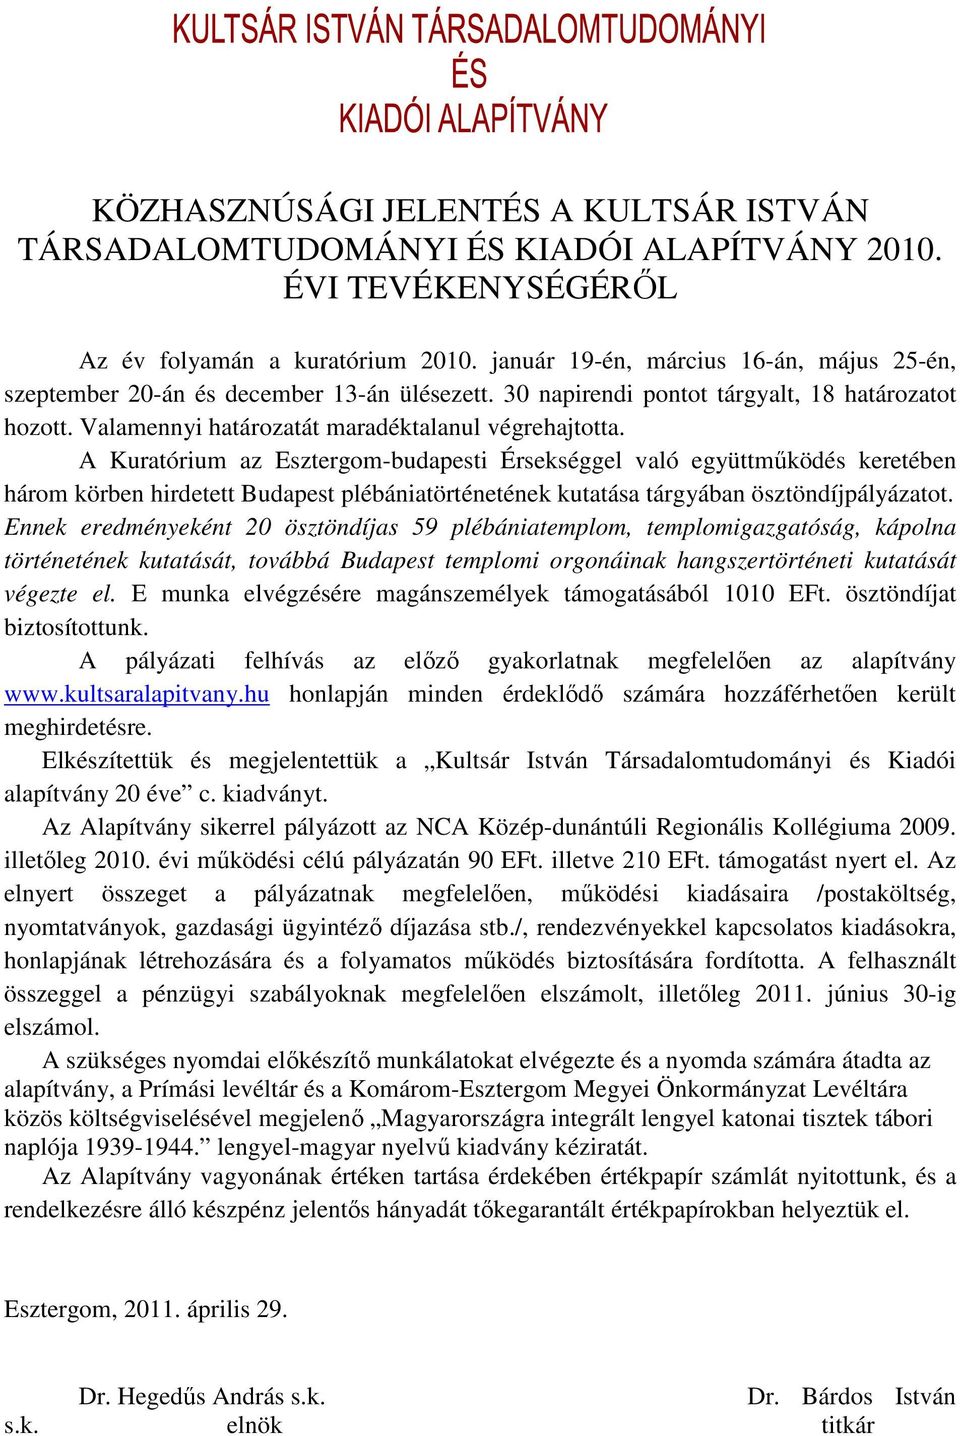 A Kuratórium az Esztergom-budapesti Érsekséggel való együttmőködés keretében három körben hirdetett Budapest plébániatörténetének kutatása tárgyában ösztöndíjpályázatot.